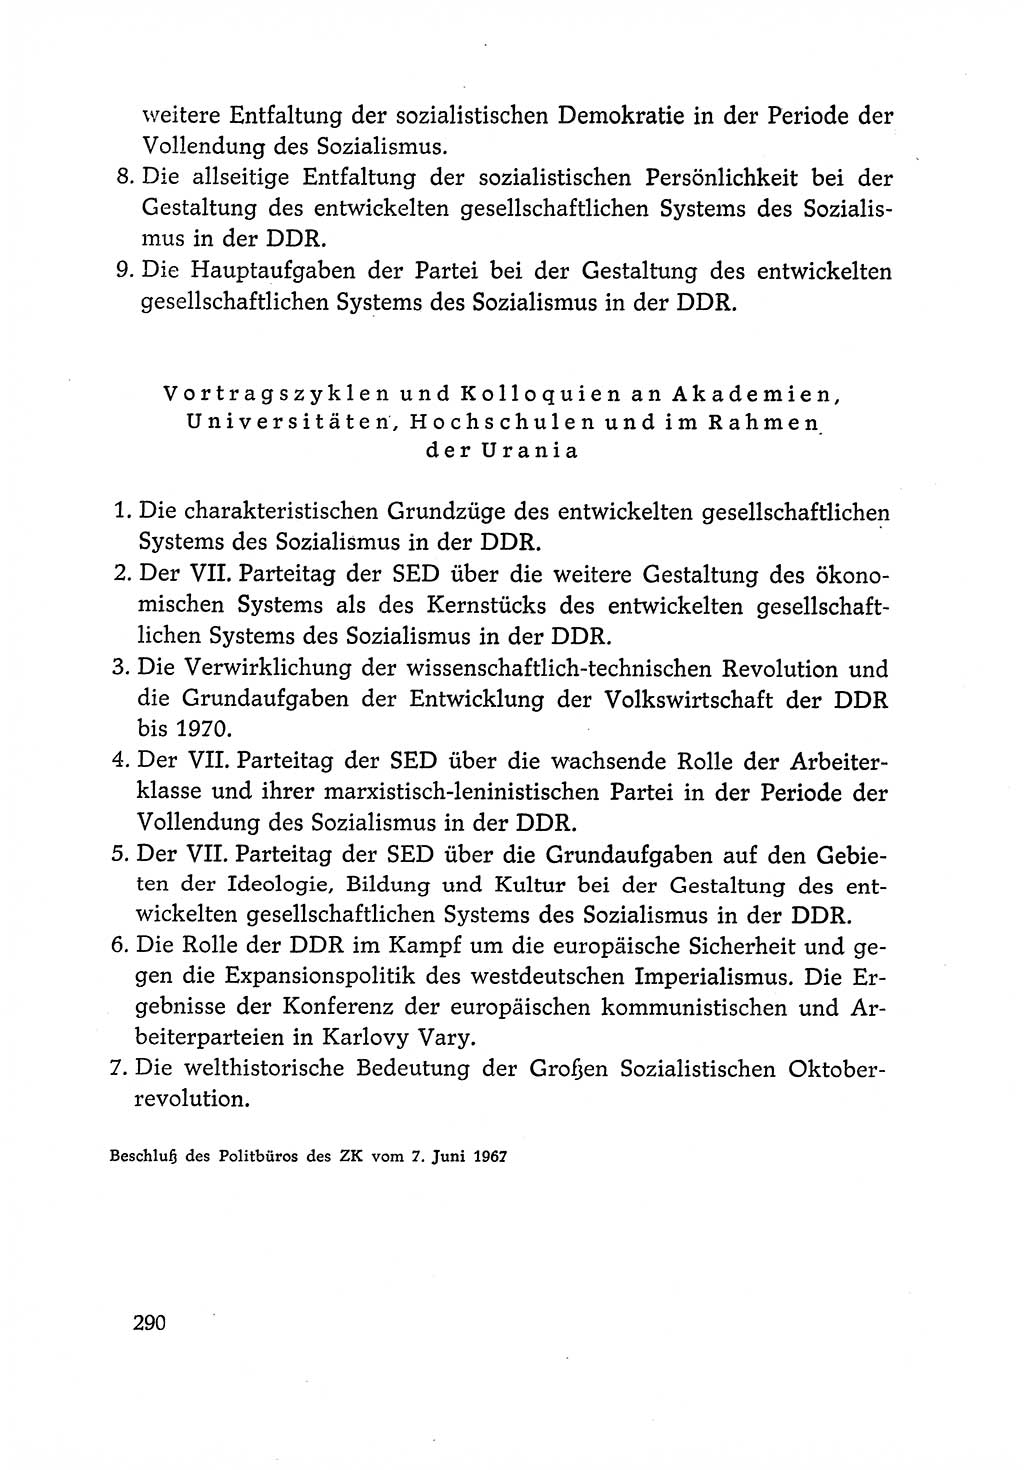 Dokumente der Sozialistischen Einheitspartei Deutschlands (SED) [Deutsche Demokratische Republik (DDR)] 1966-1967, Seite 290 (Dok. SED DDR 1966-1967, S. 290)